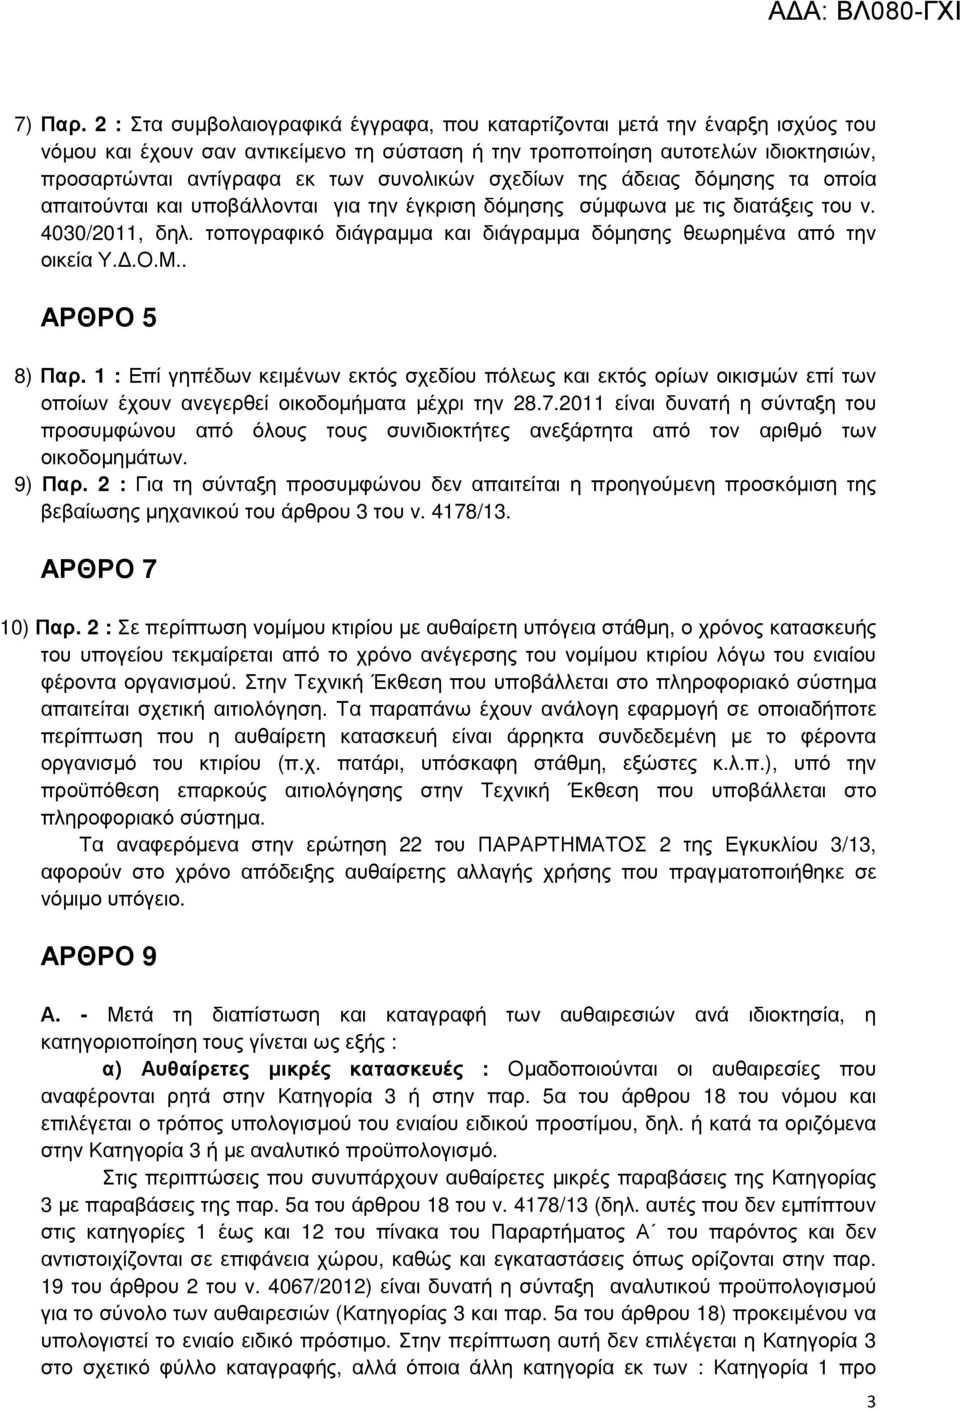 συνολικών σχεδίων της άδειας δόµησης τα οποία απαιτούνται και υποβάλλονται για την έγκριση δόµησης σύµφωνα µε τις διατάξεις του ν. 4030/2011, δηλ.